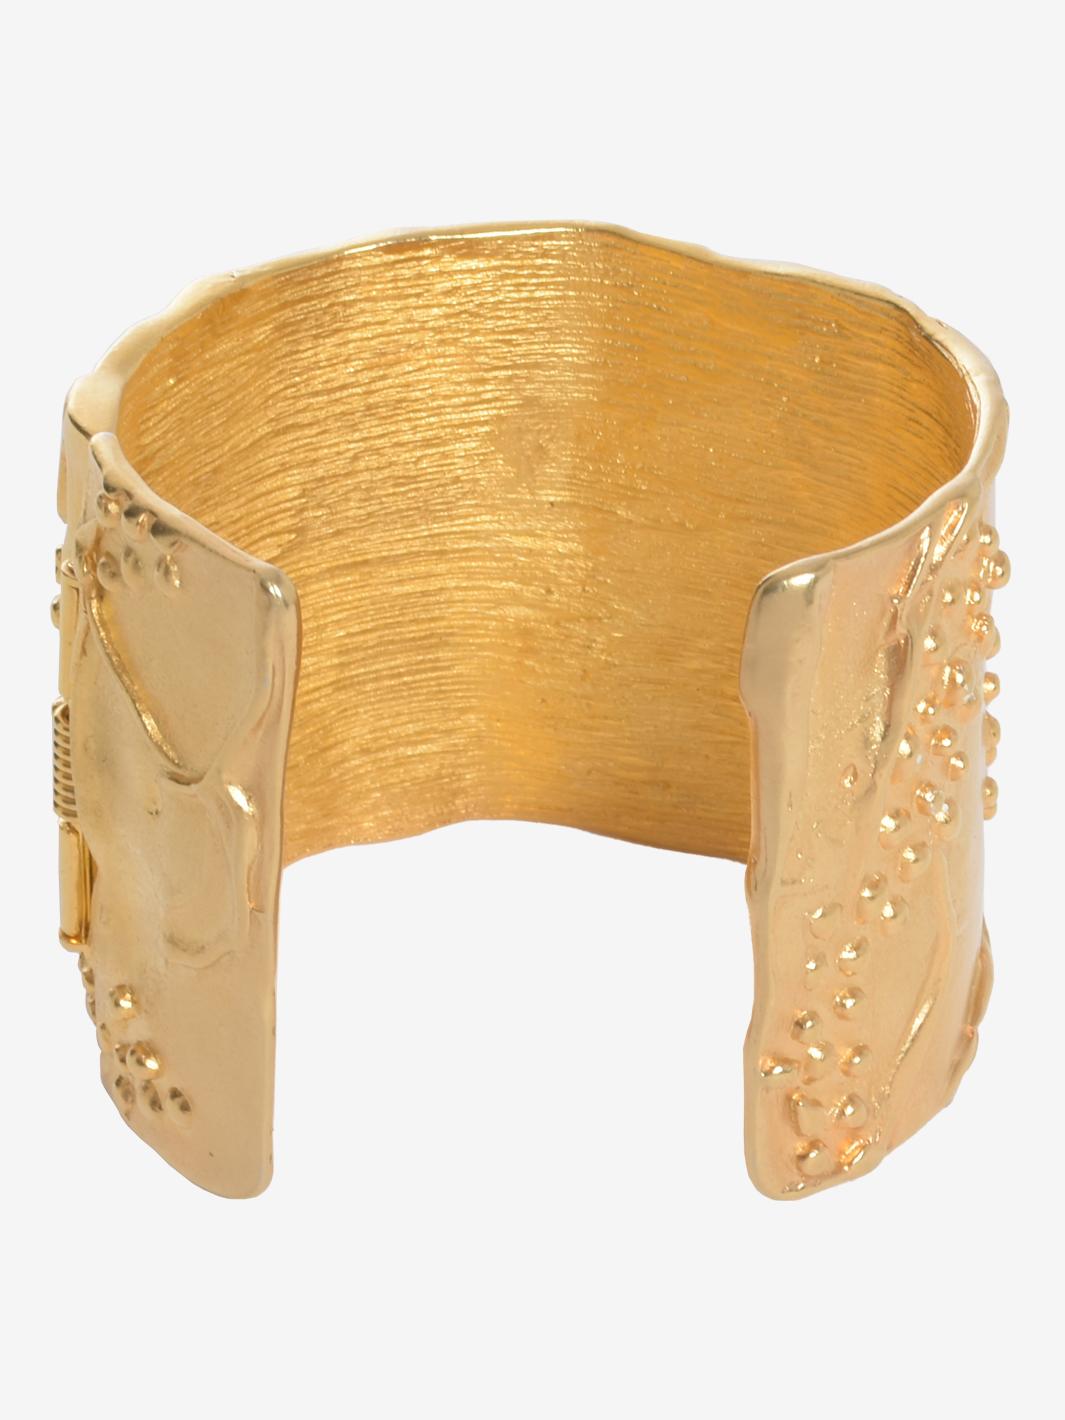 Das Kenneth Jay Lane Gold Large Rigid Band Bracelet With Rhinestones ist ein einzigartiges, von Diana Vreeland sehr geschätztes Design, das Lane für sie kreiert hatte. Weiße Strasssteine auf gegossenem amerikanischem Zinn überzogen mit Hamilton Gold